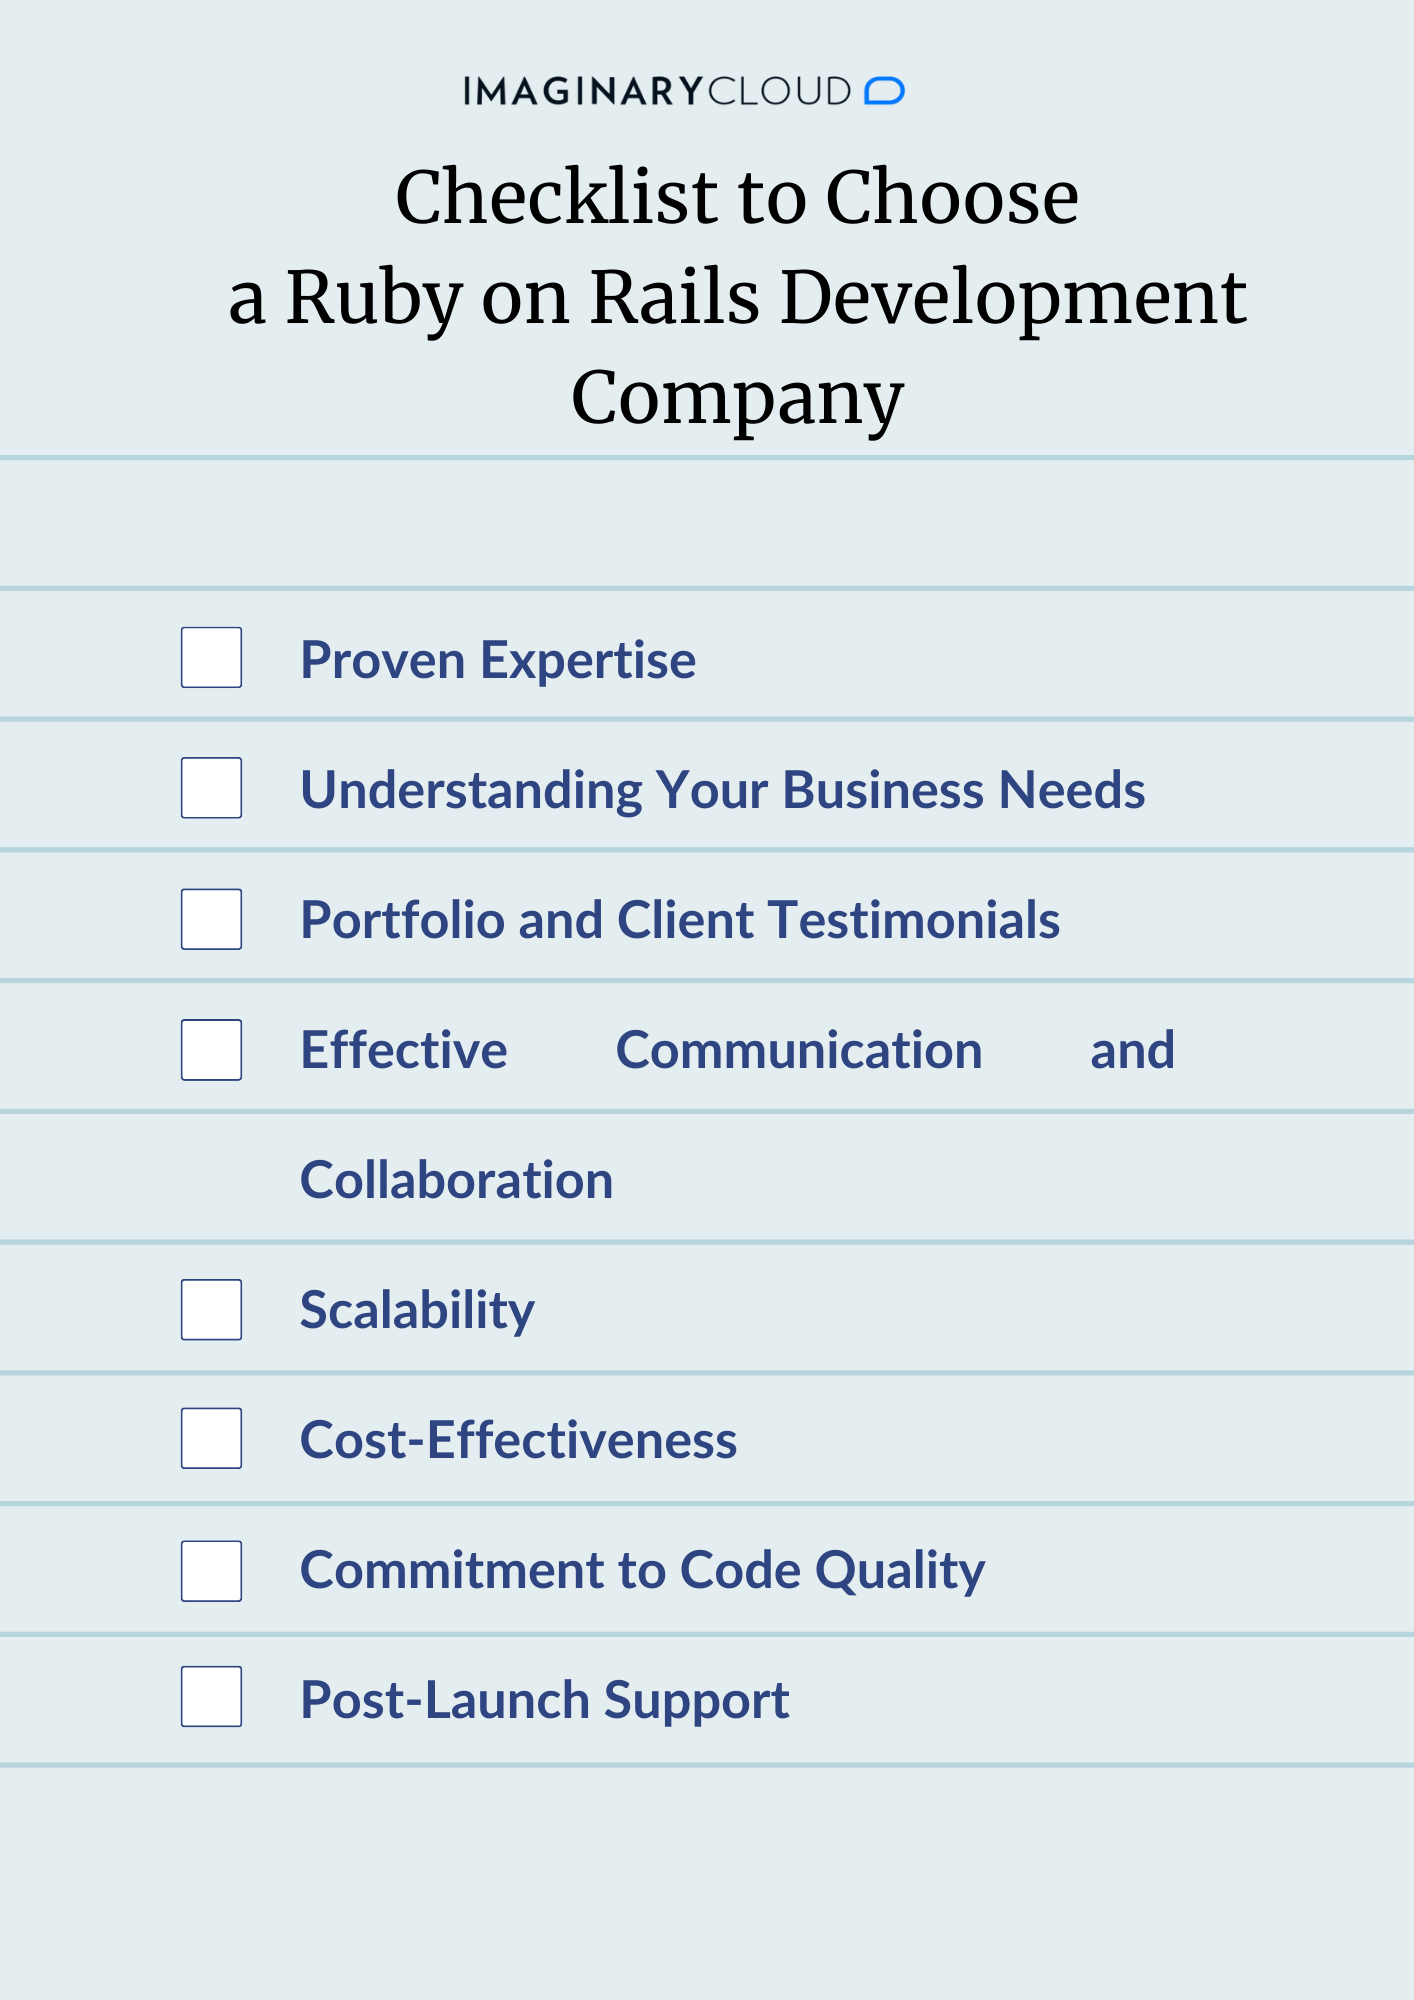 Checklist to Choose a RoR Development Company